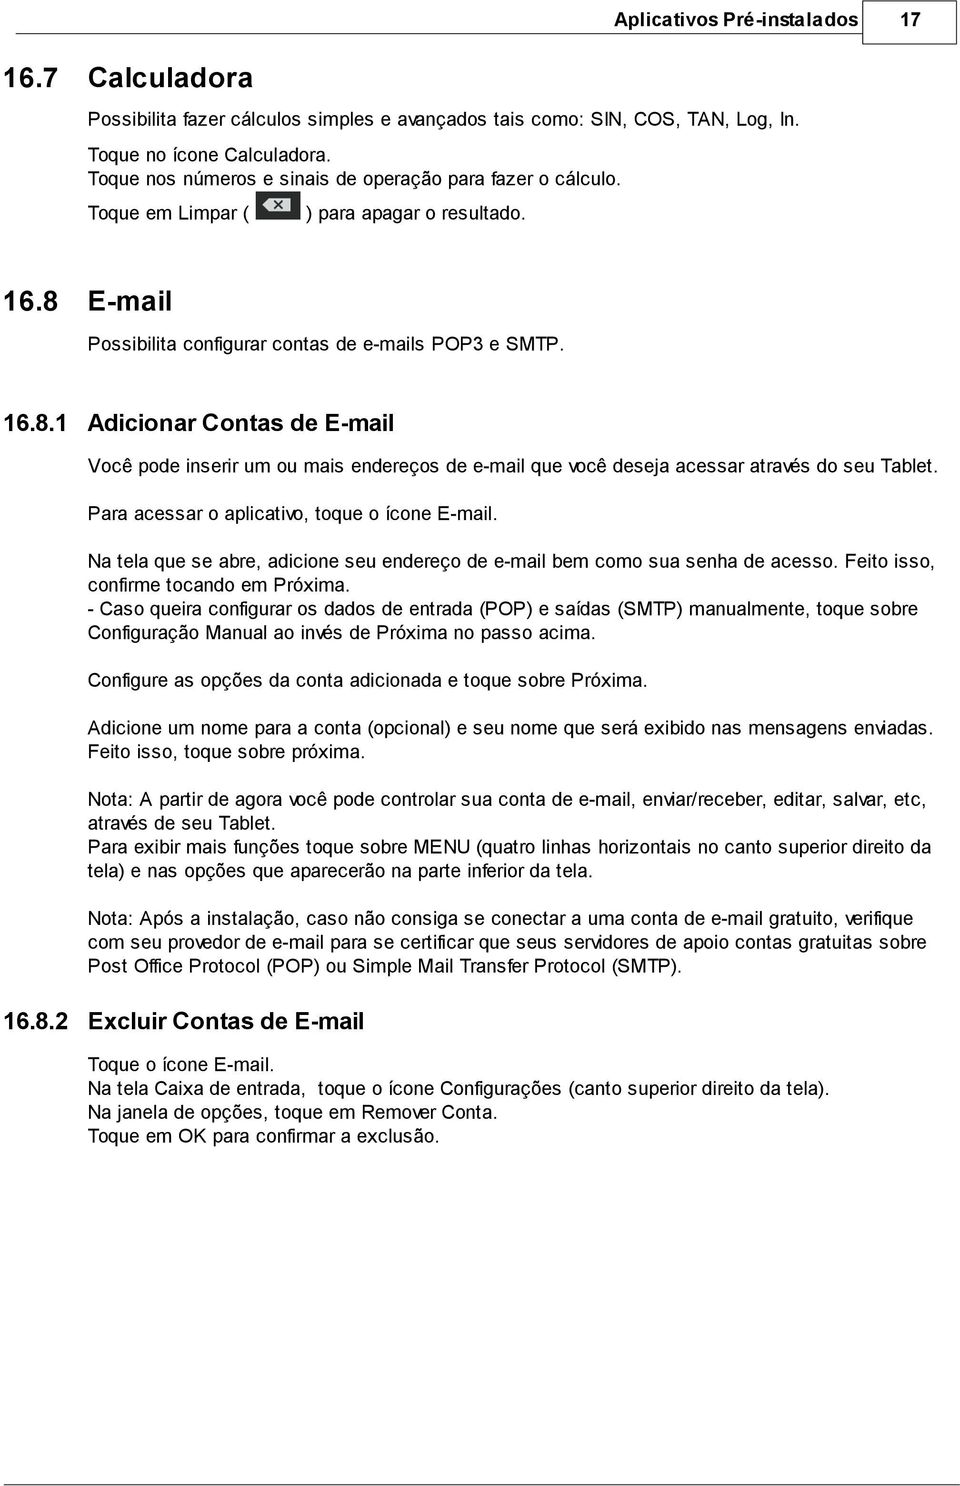 ) para apagar o resultado. E-mail Possibilita configurar contas de e-mails POP3 e SMTP. 16.8.